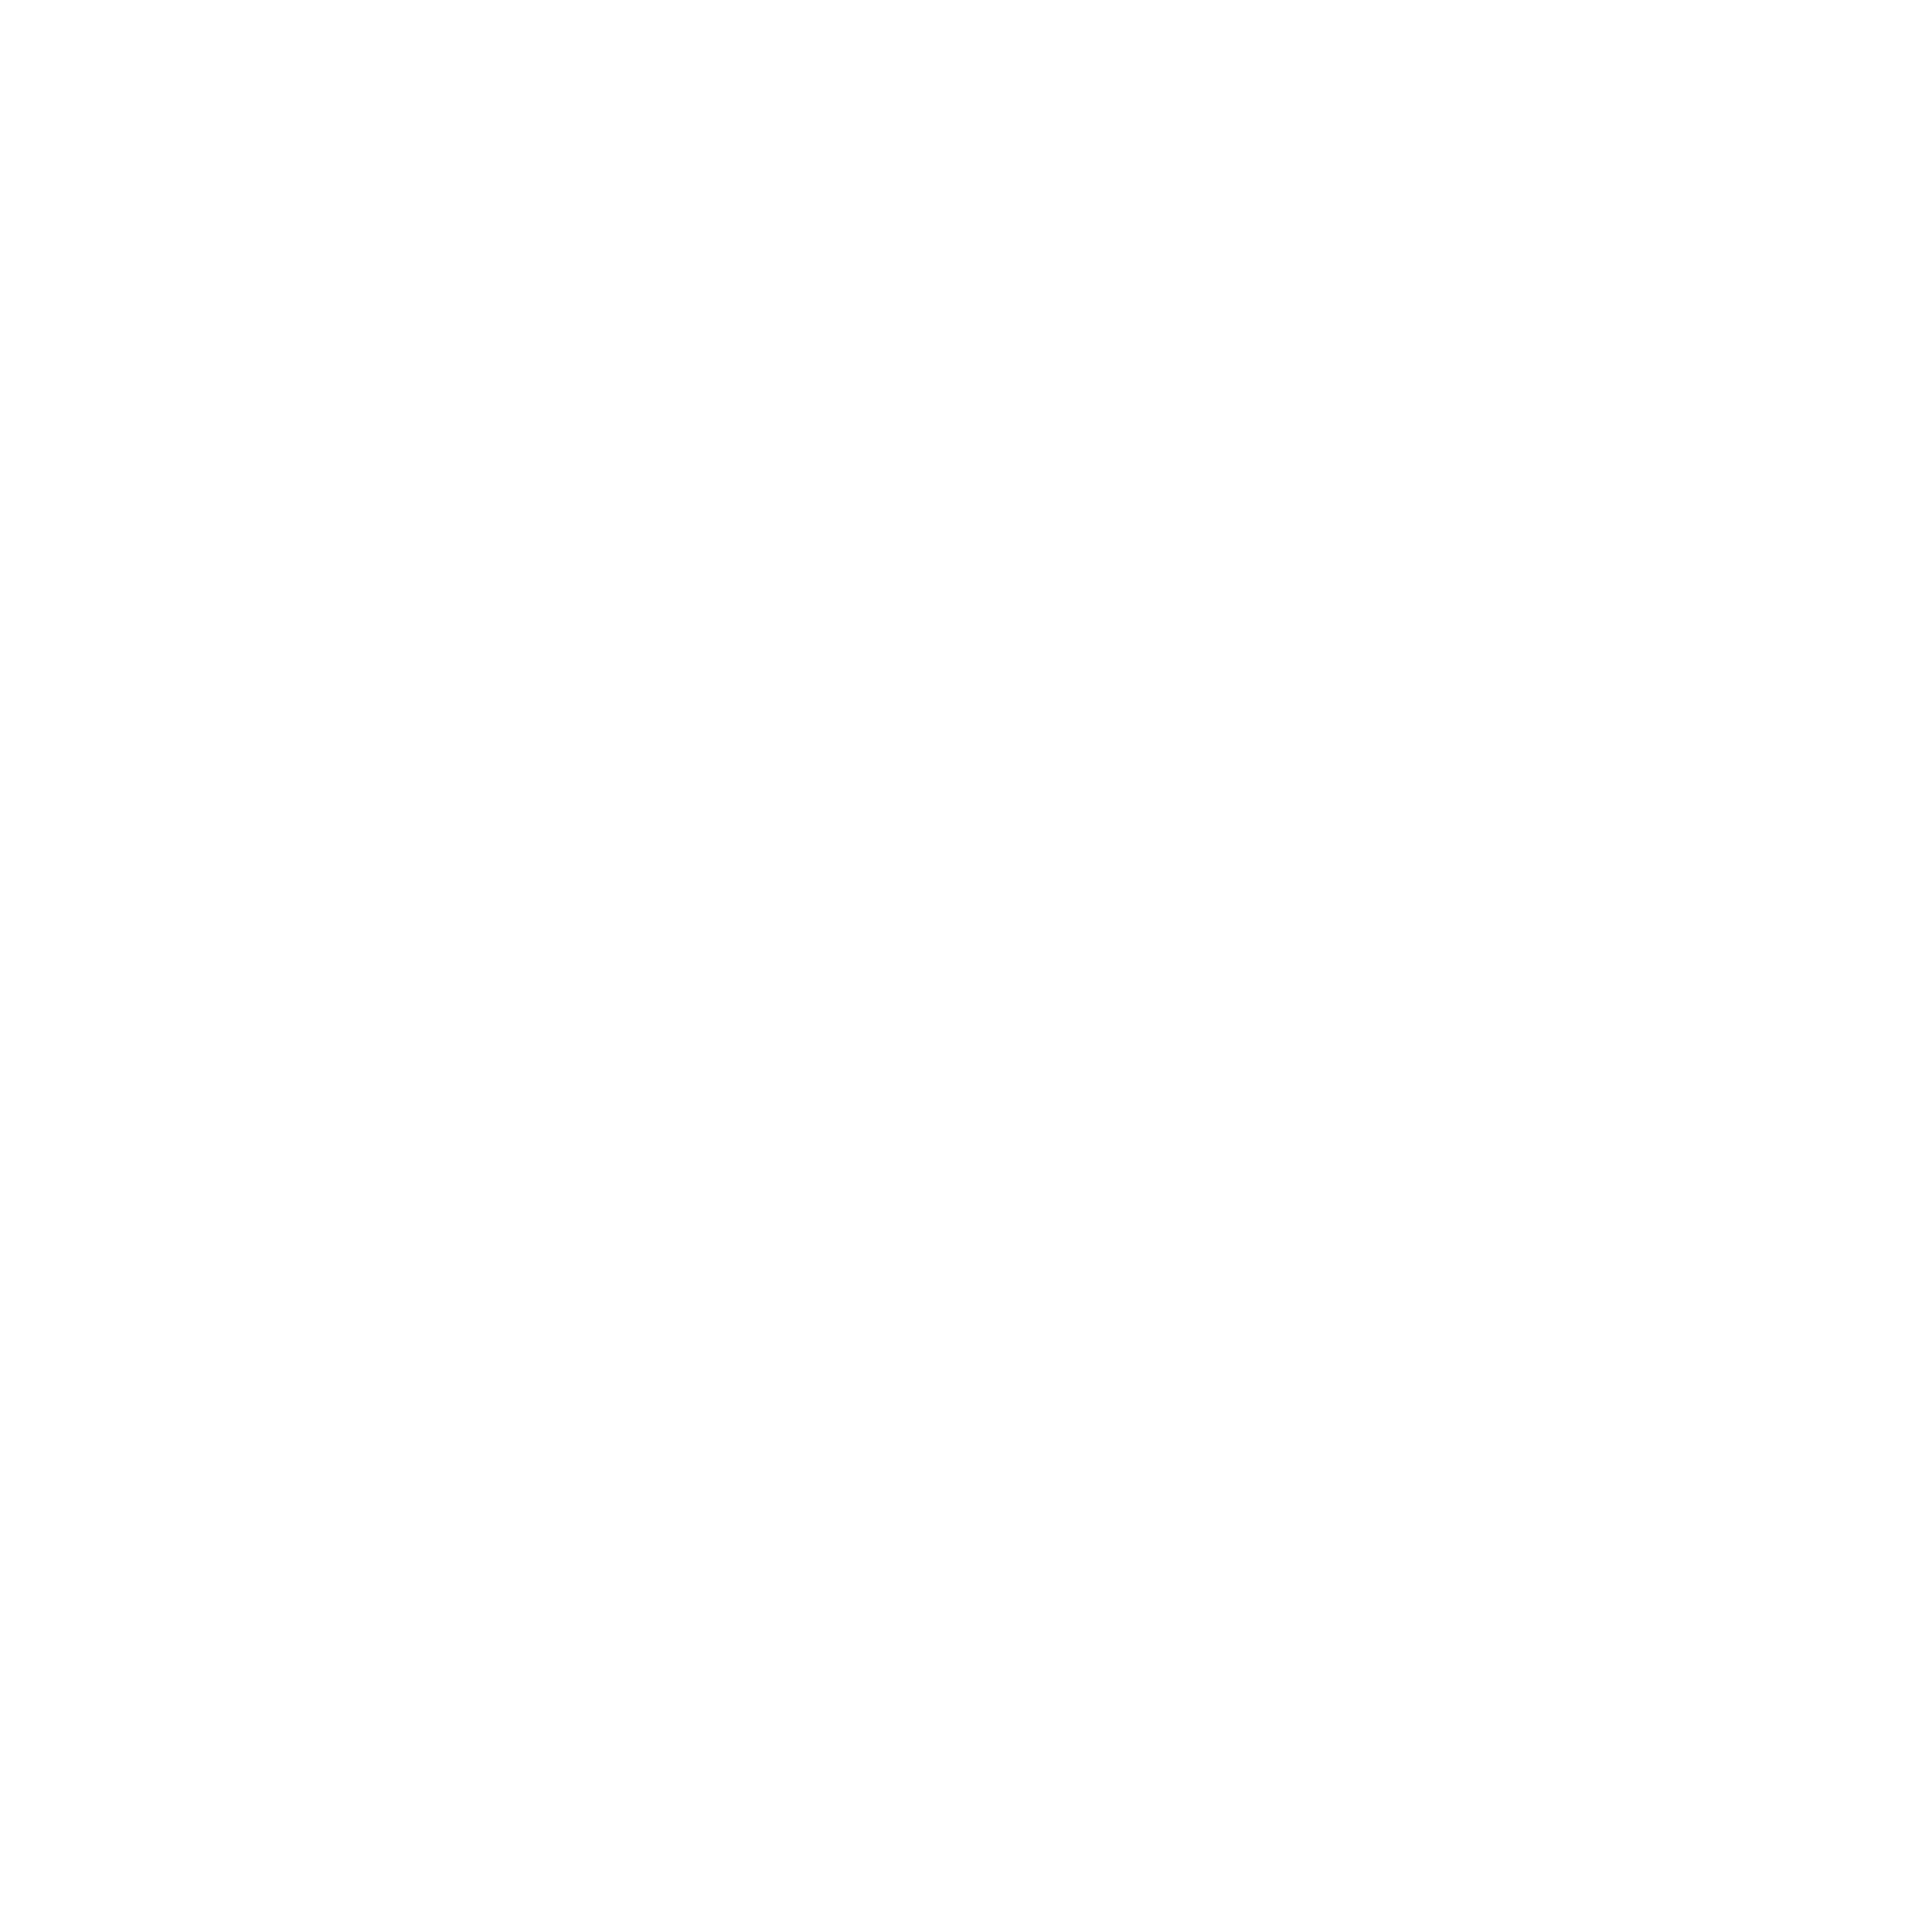 coachtoolz logo dark background